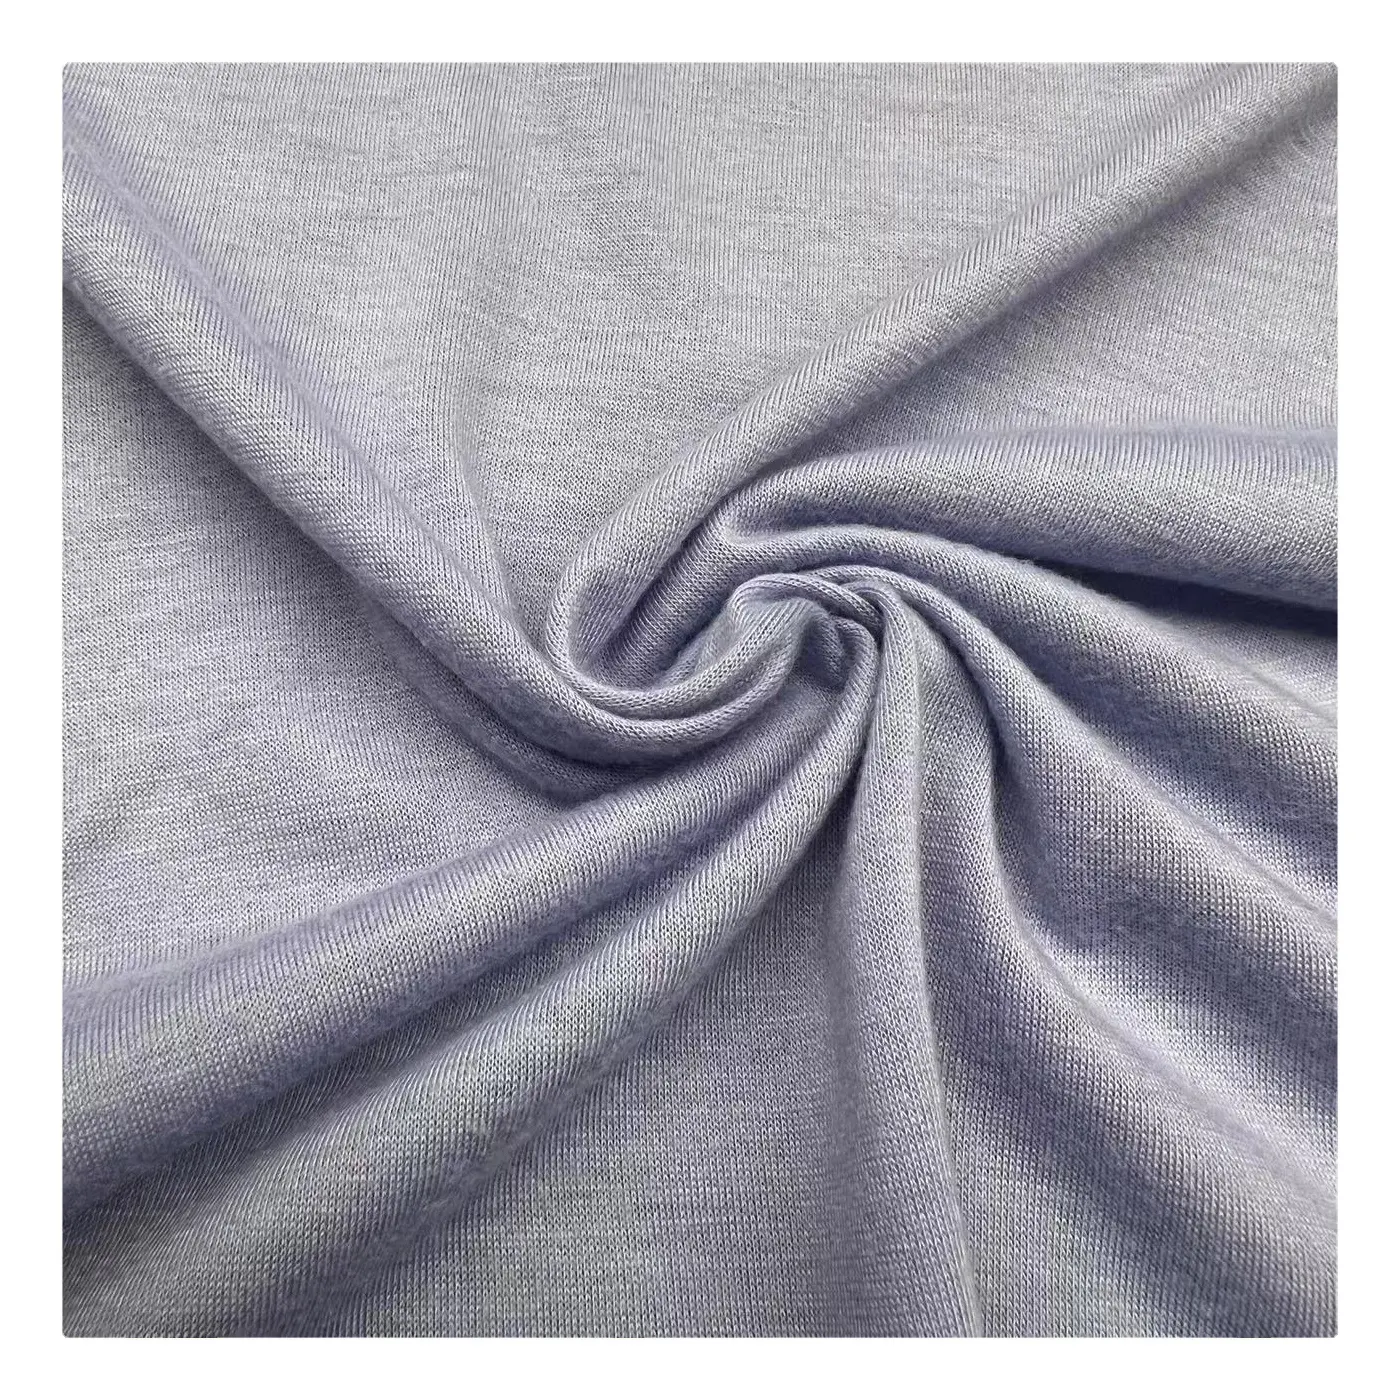 Rouleaux en poly jersey 100% polyester, prix d'usine, tricot, tissu uni pour chemises